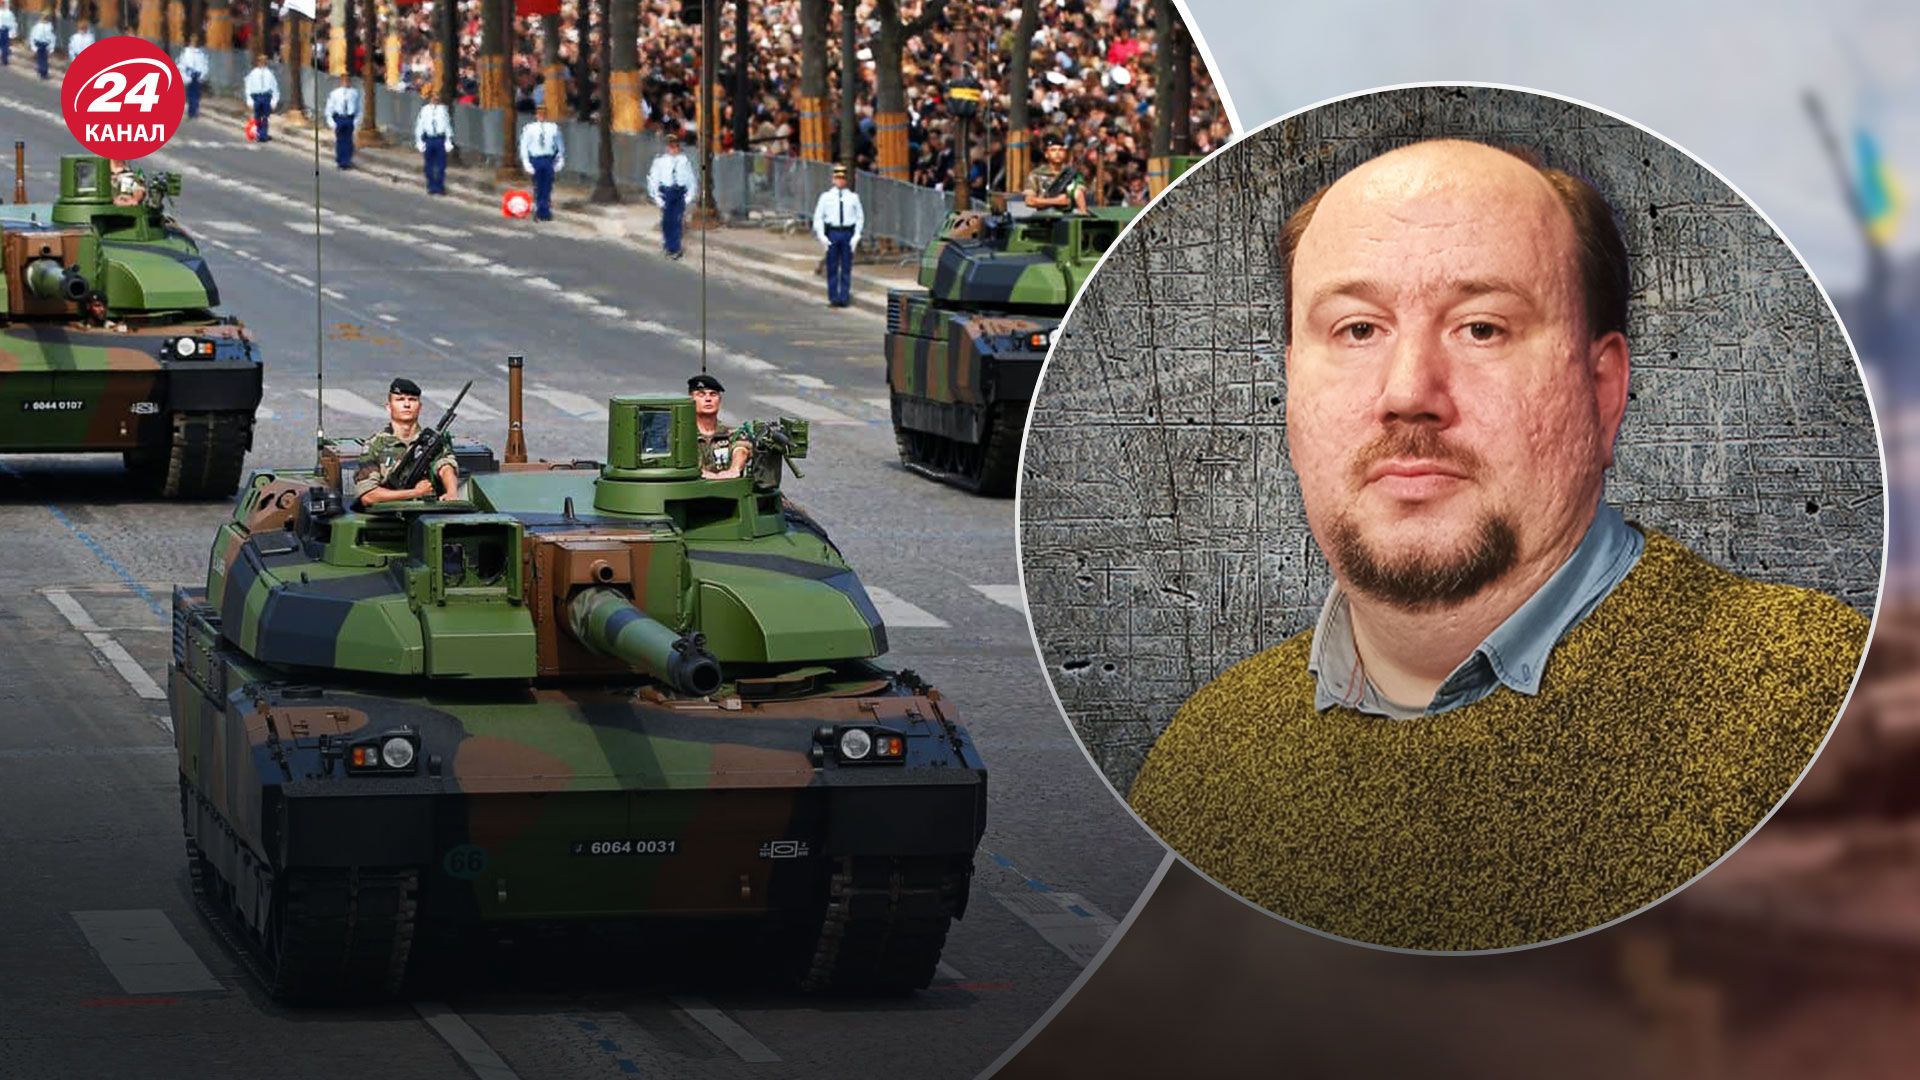 Танки Leclerc для України – чи надасть Франція танки Україні - 24 Канал